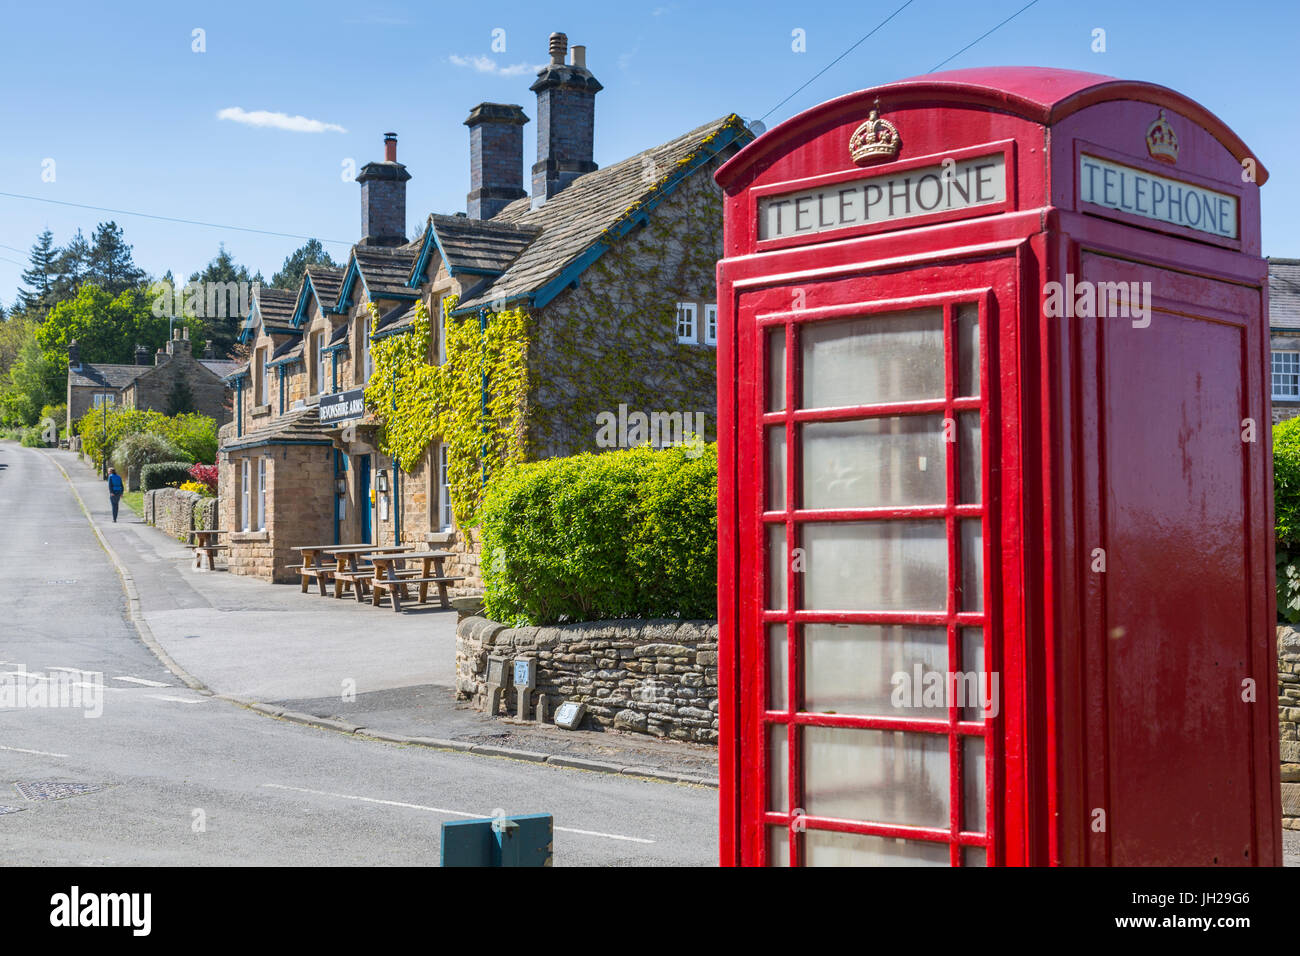 Boîte de téléphone rouge à Beeley Village de printemps, Derbyshire Dales, Derbyshire, Angleterre, Royaume-Uni, Europe Banque D'Images